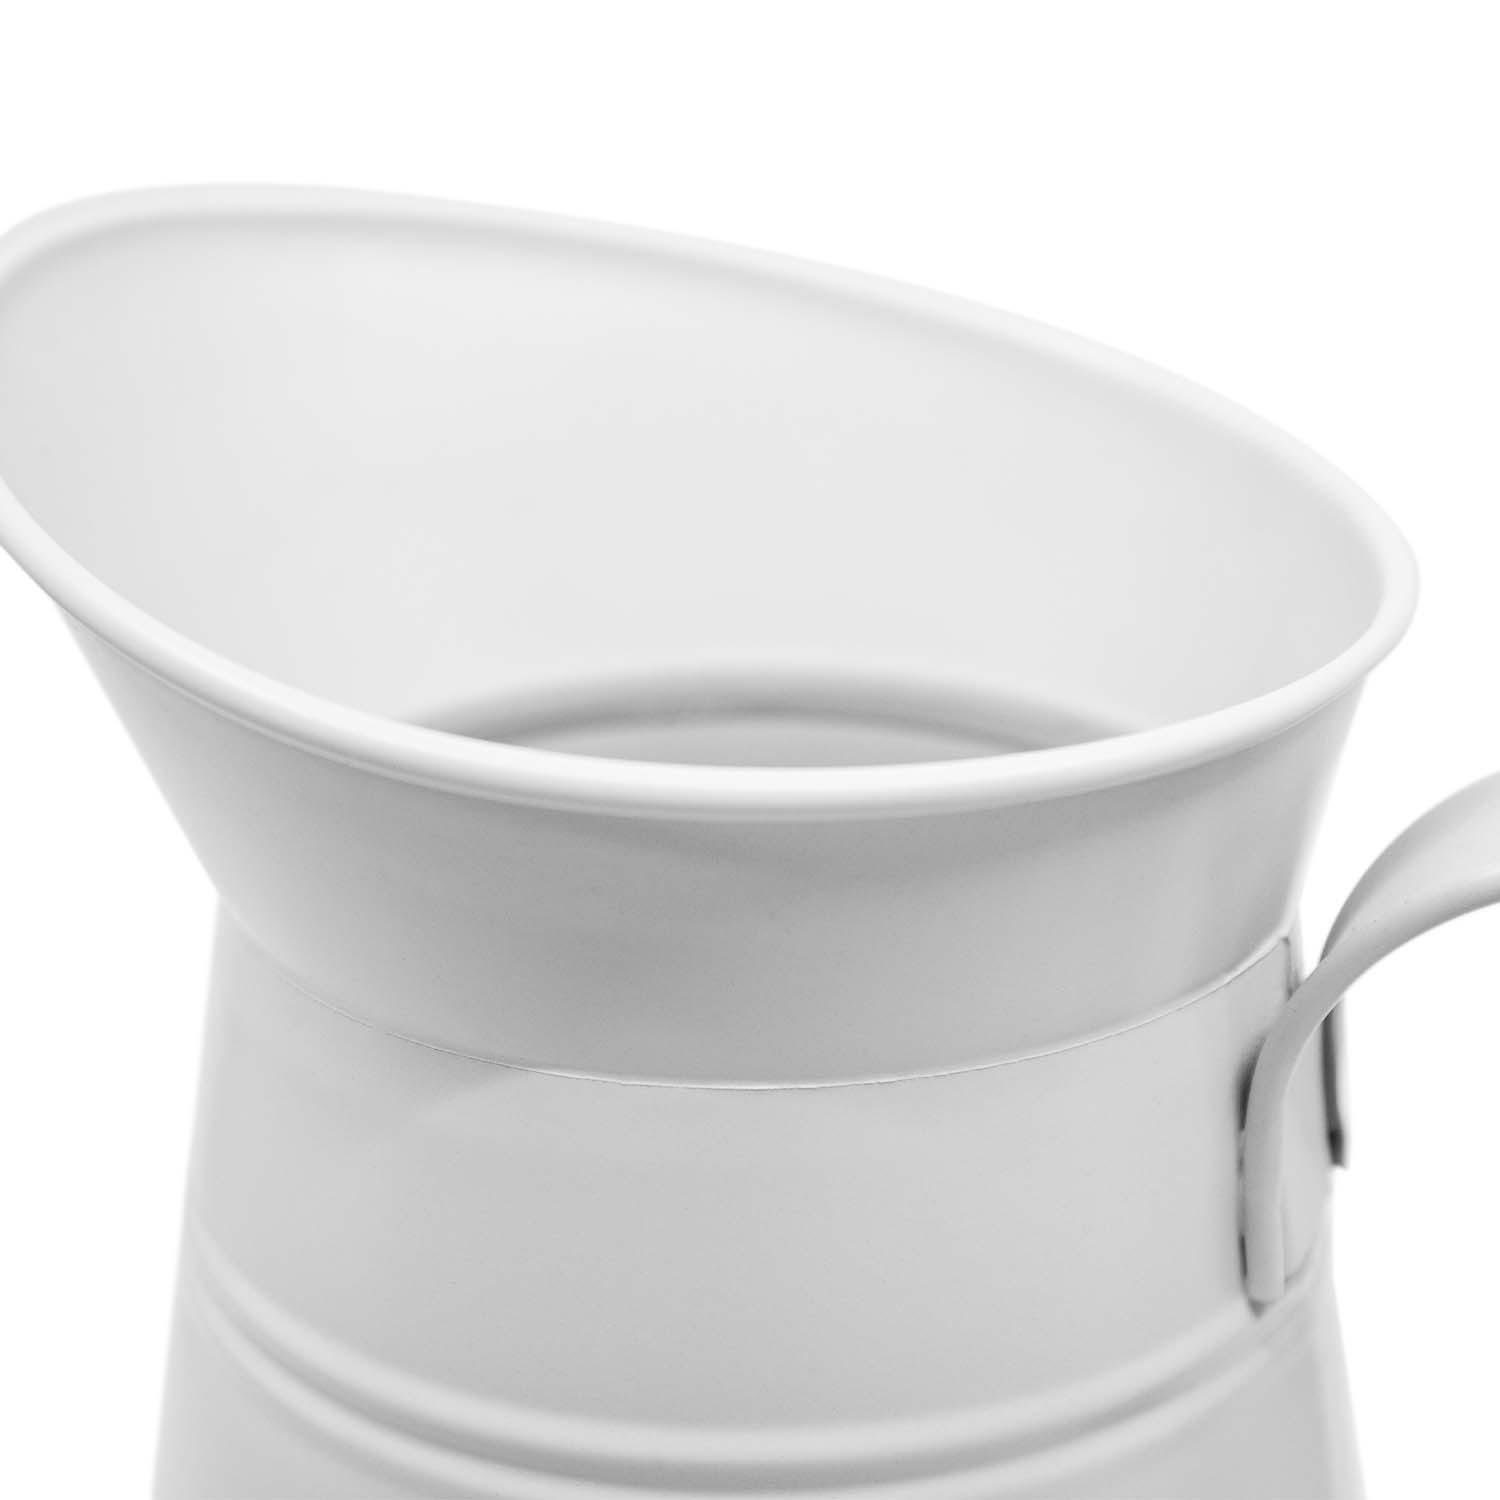 Thermoholzbürste rund Bürste WC-Kanne wechselbarer Bürstenkopf WC-Bürstengarnitur weiß Nylon dunkel 2-tlg), Redecker Toilettenbürste, WC-Garnitur (Komplett-Set,